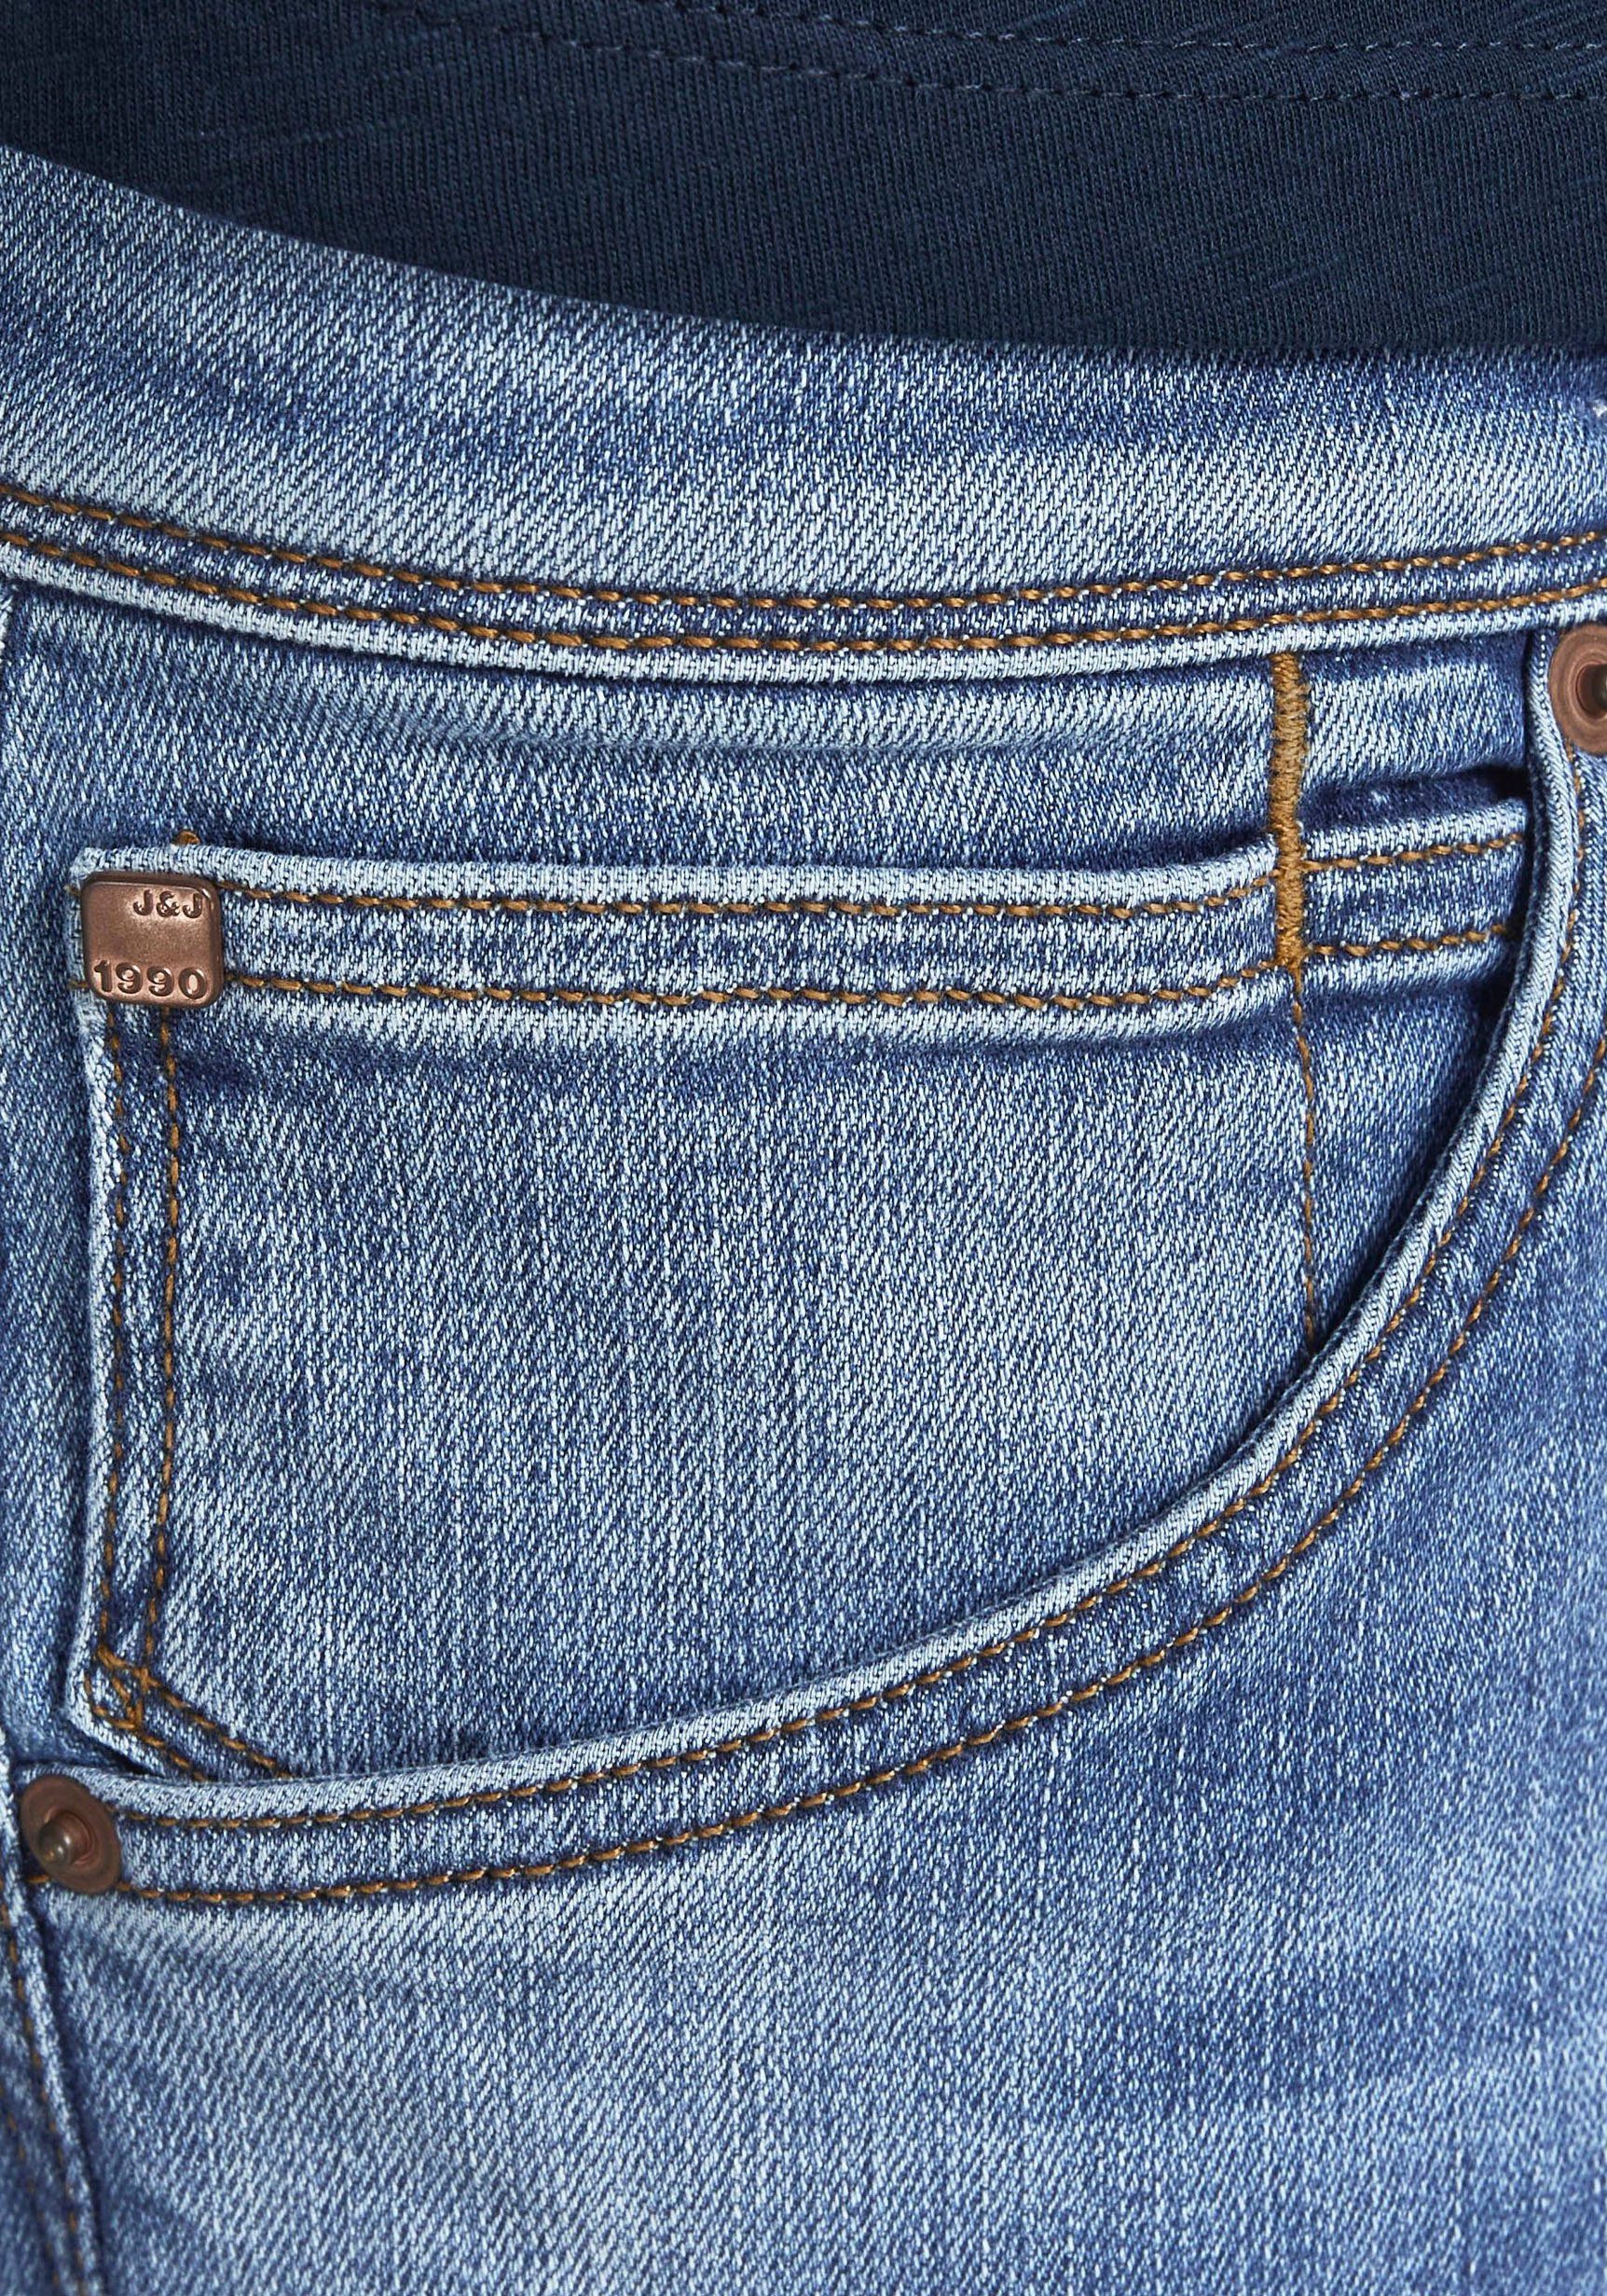 Jack Jones & Glenn Slim-fit-Jeans light-blue-denim